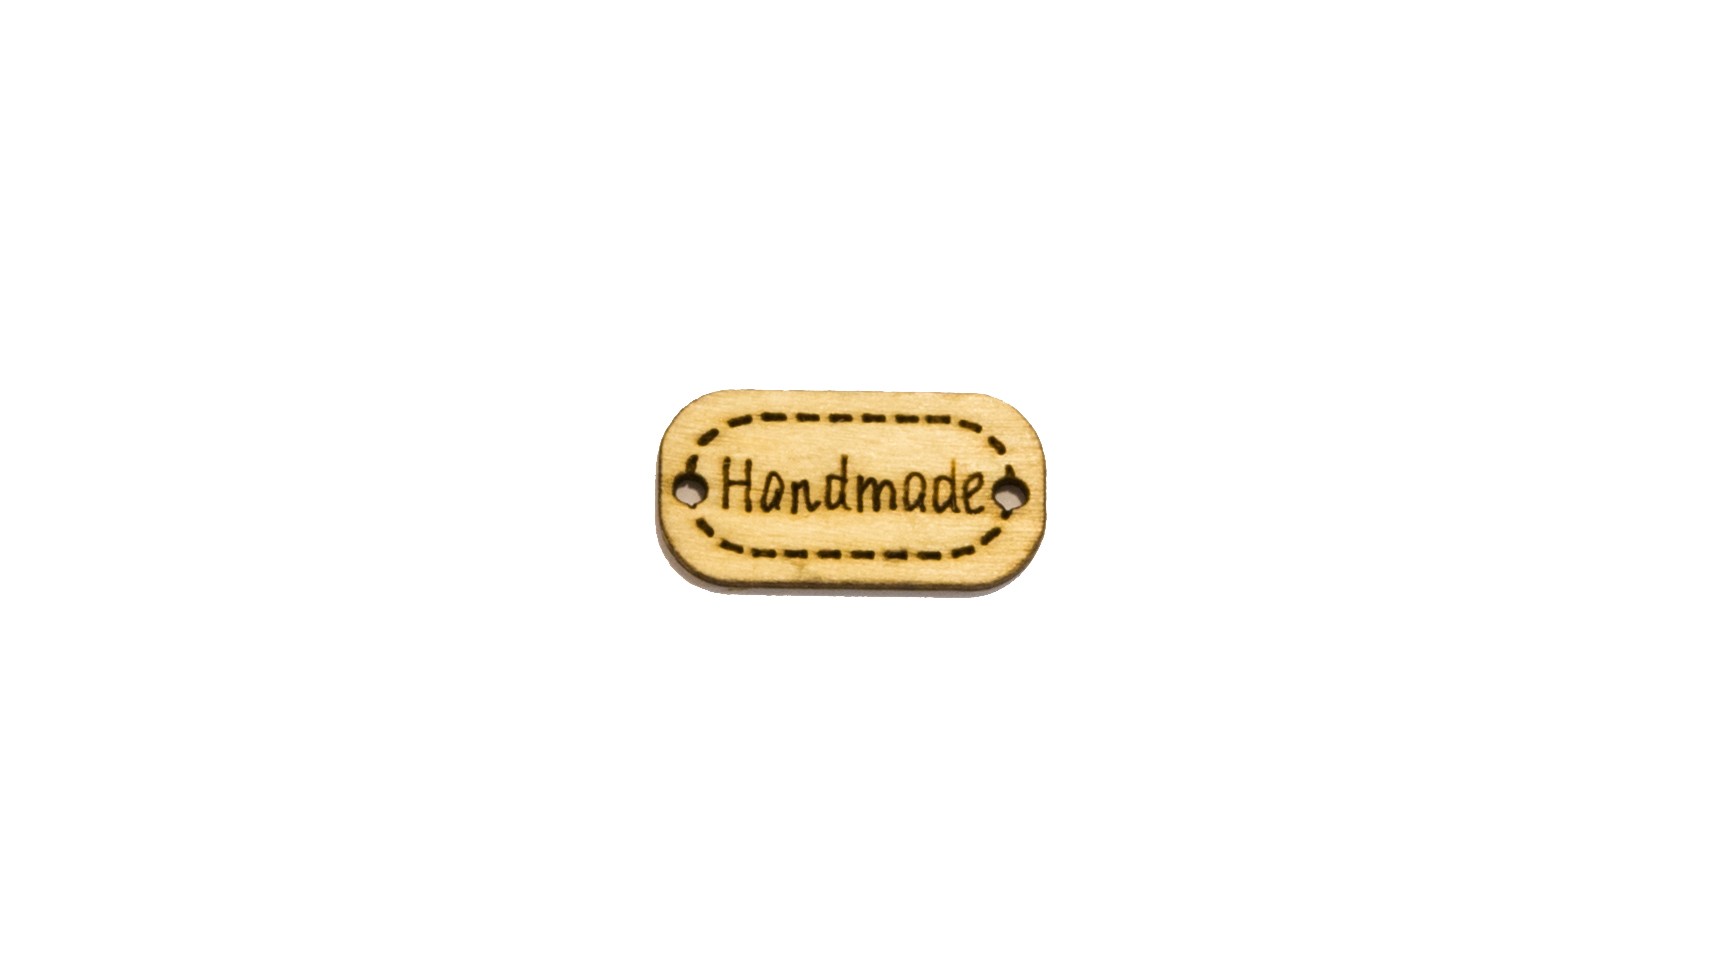 Handmade - Rectangular